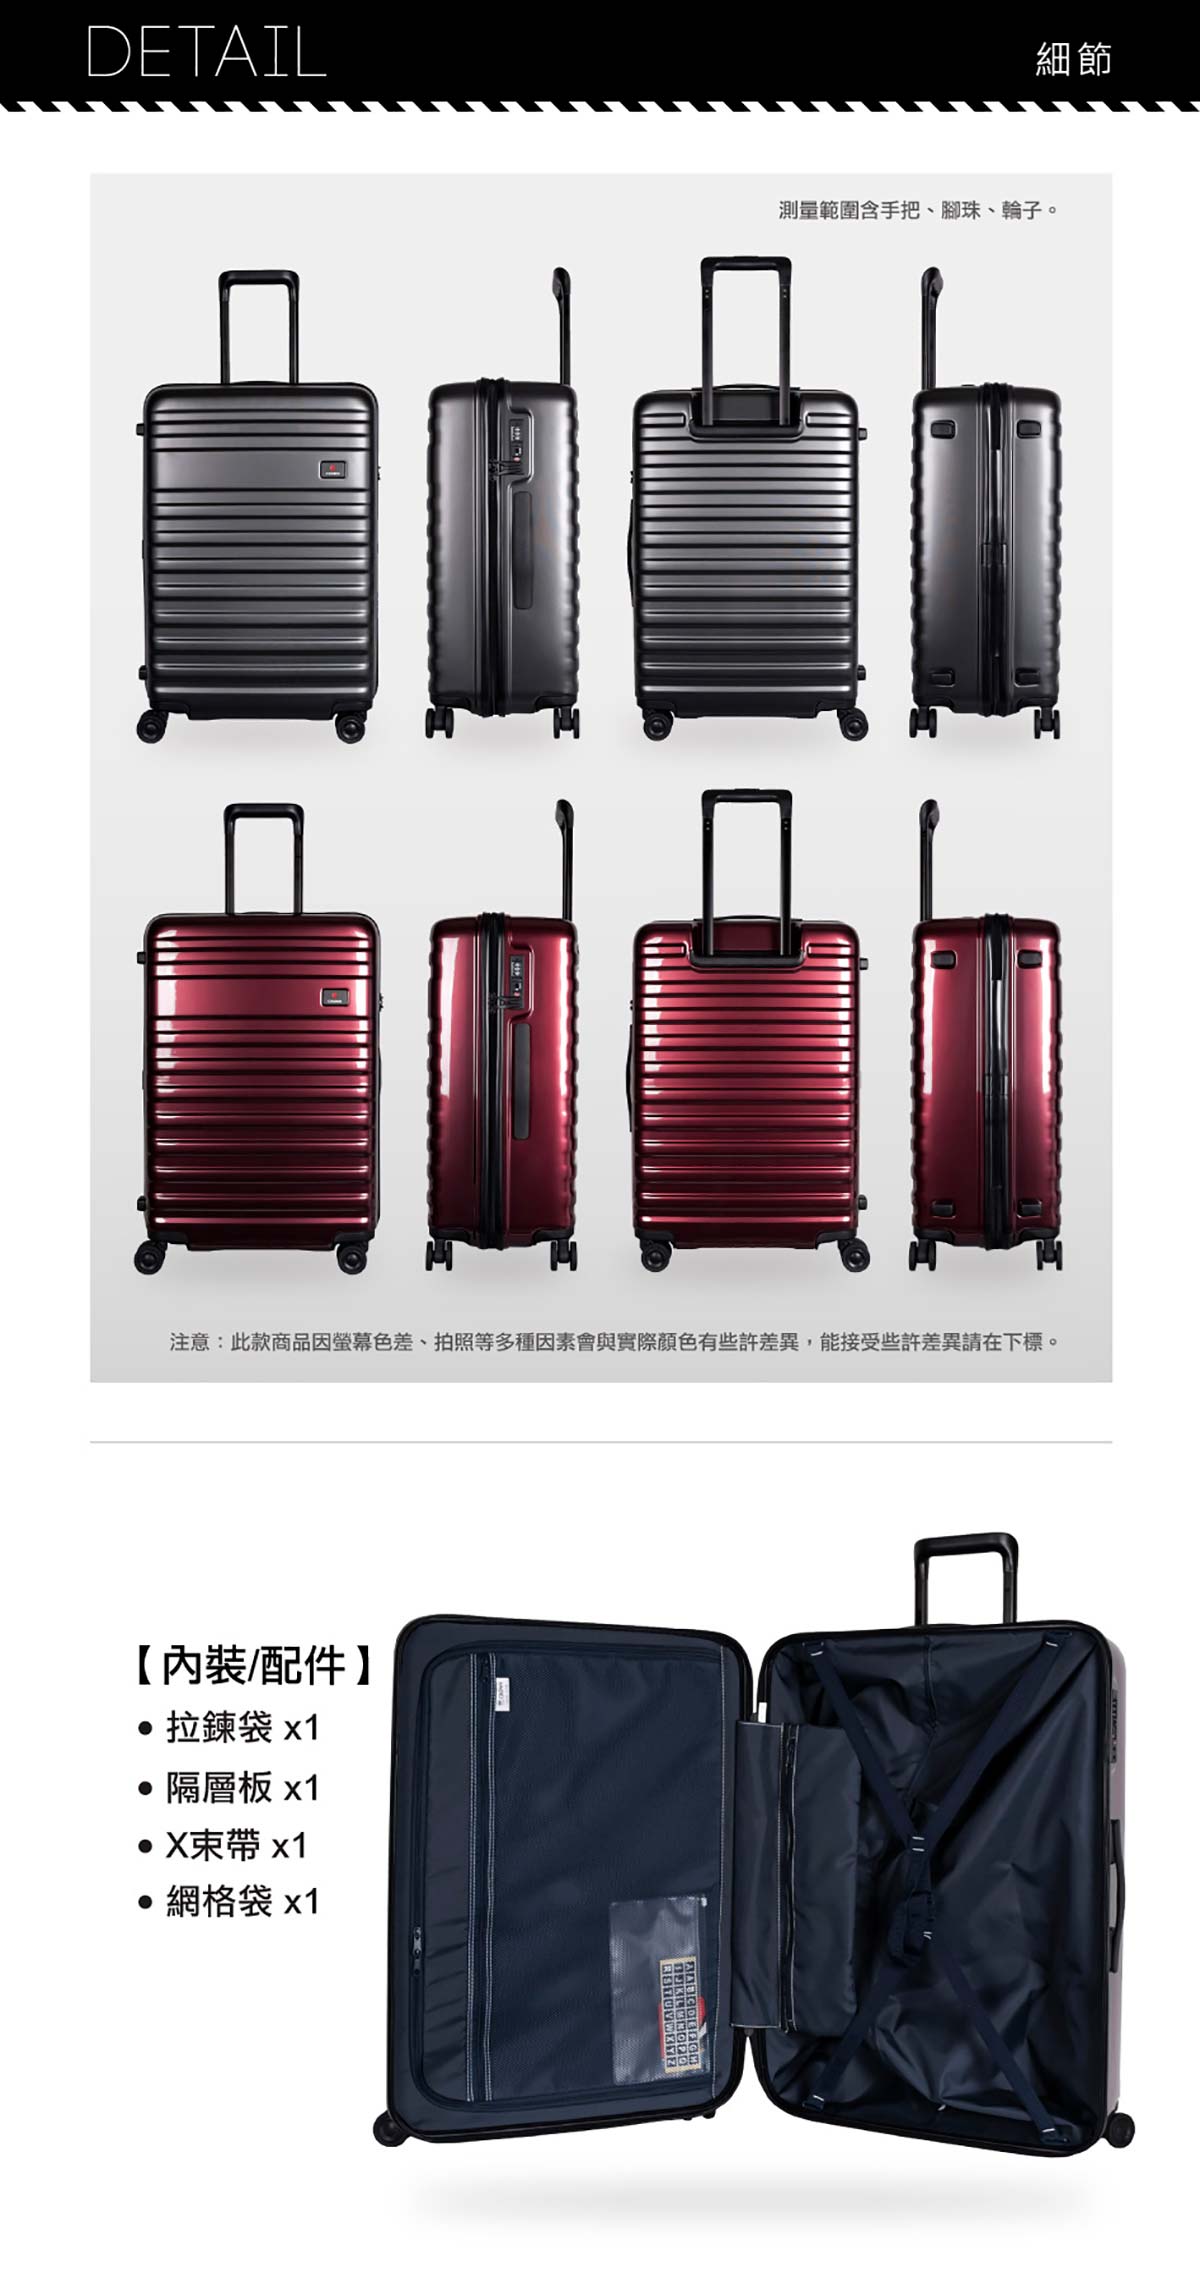 CROWN 21+29 吋行李箱，兩色選擇，具有拉鍊帶、隔層板、X束帶、網格帶，21吋可攜帶登機。